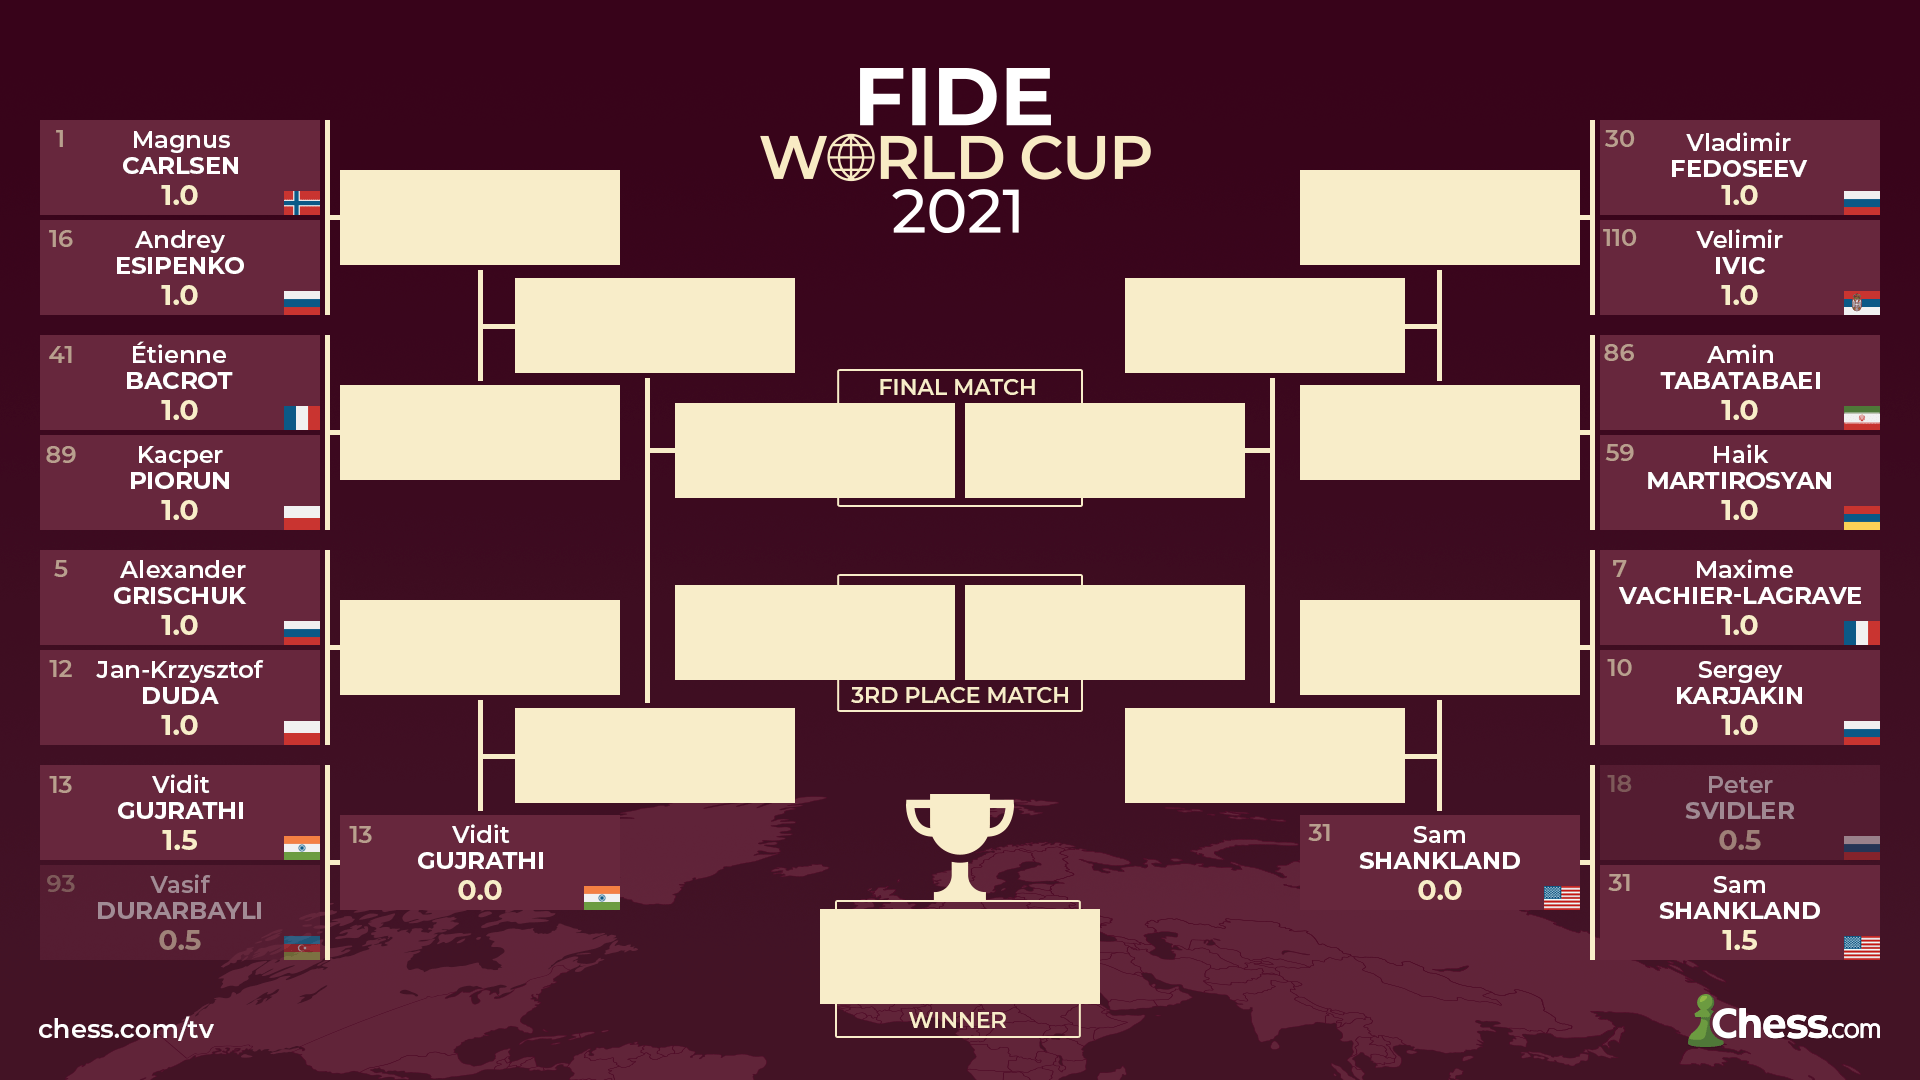 2021 FIDE World Cup bracket